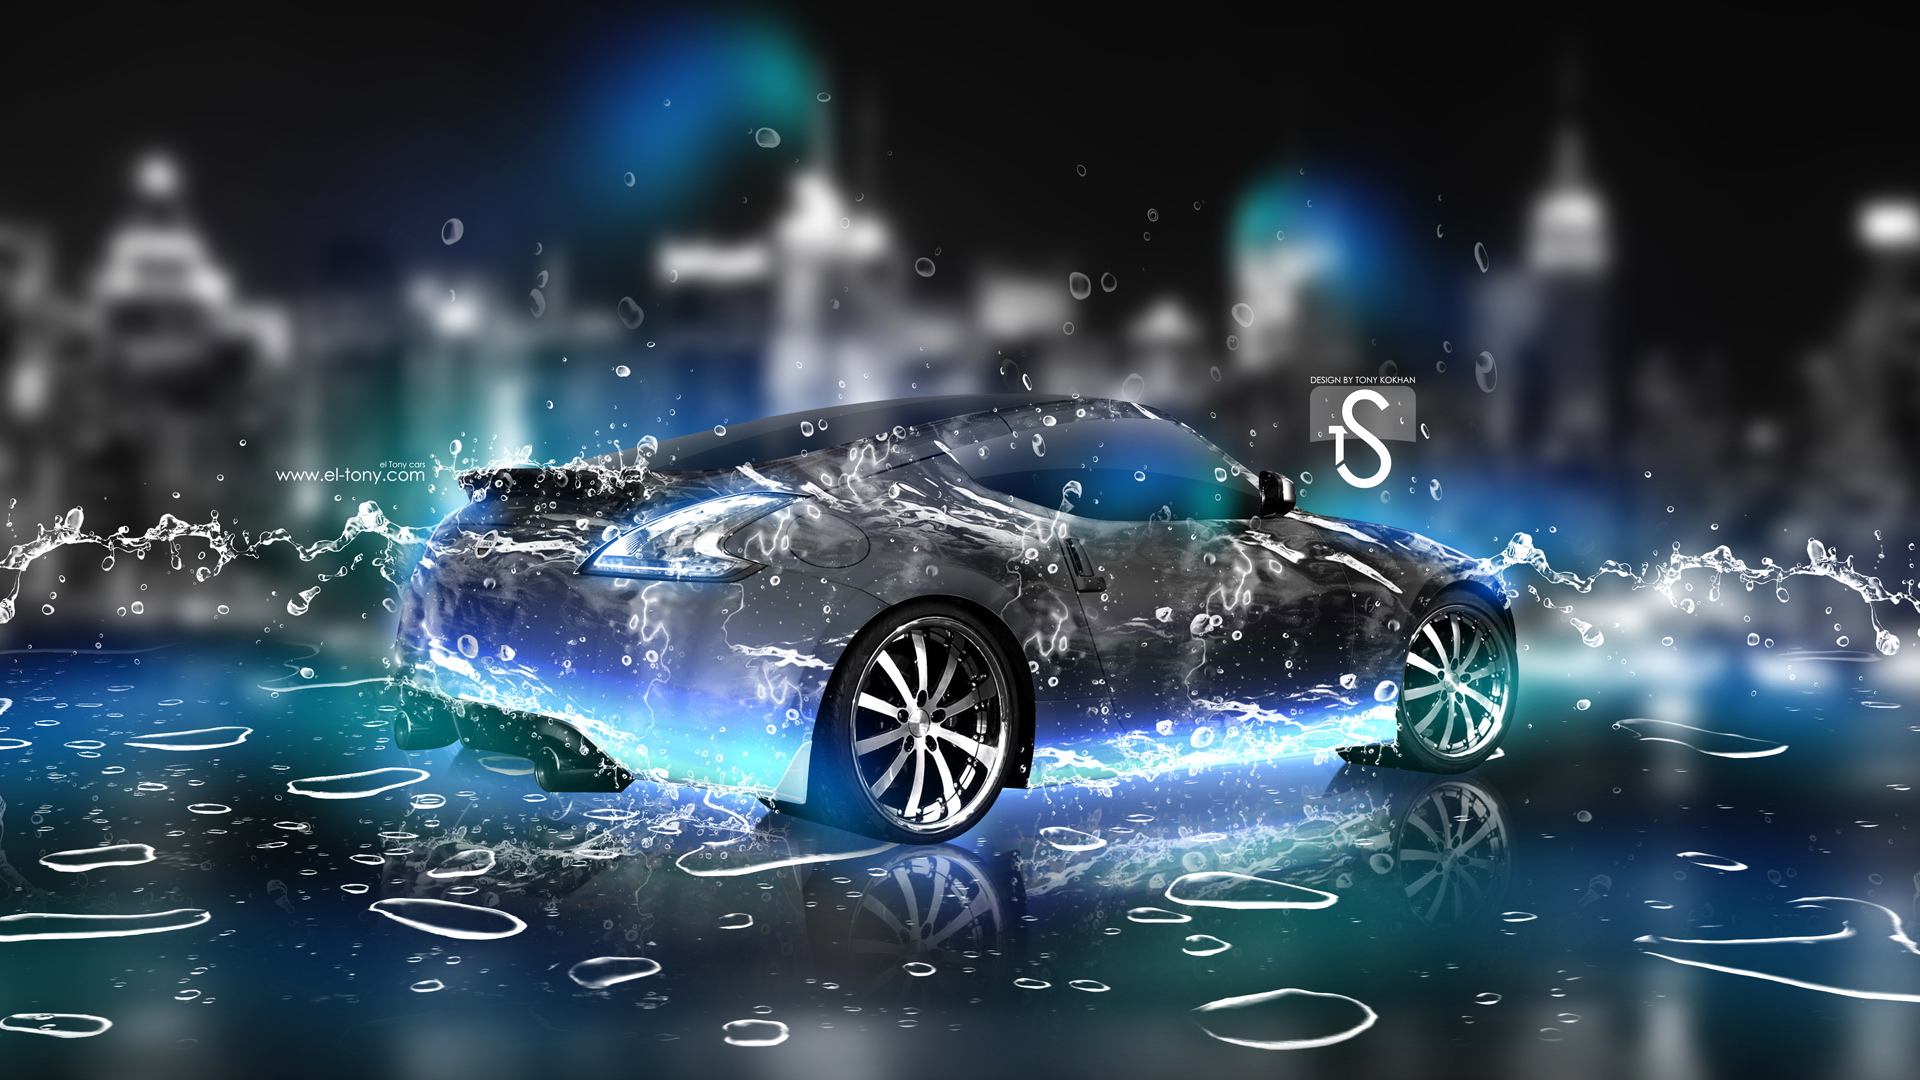 疯狂设计:《水》世界名牌汽车梦幻设计宽屏壁纸